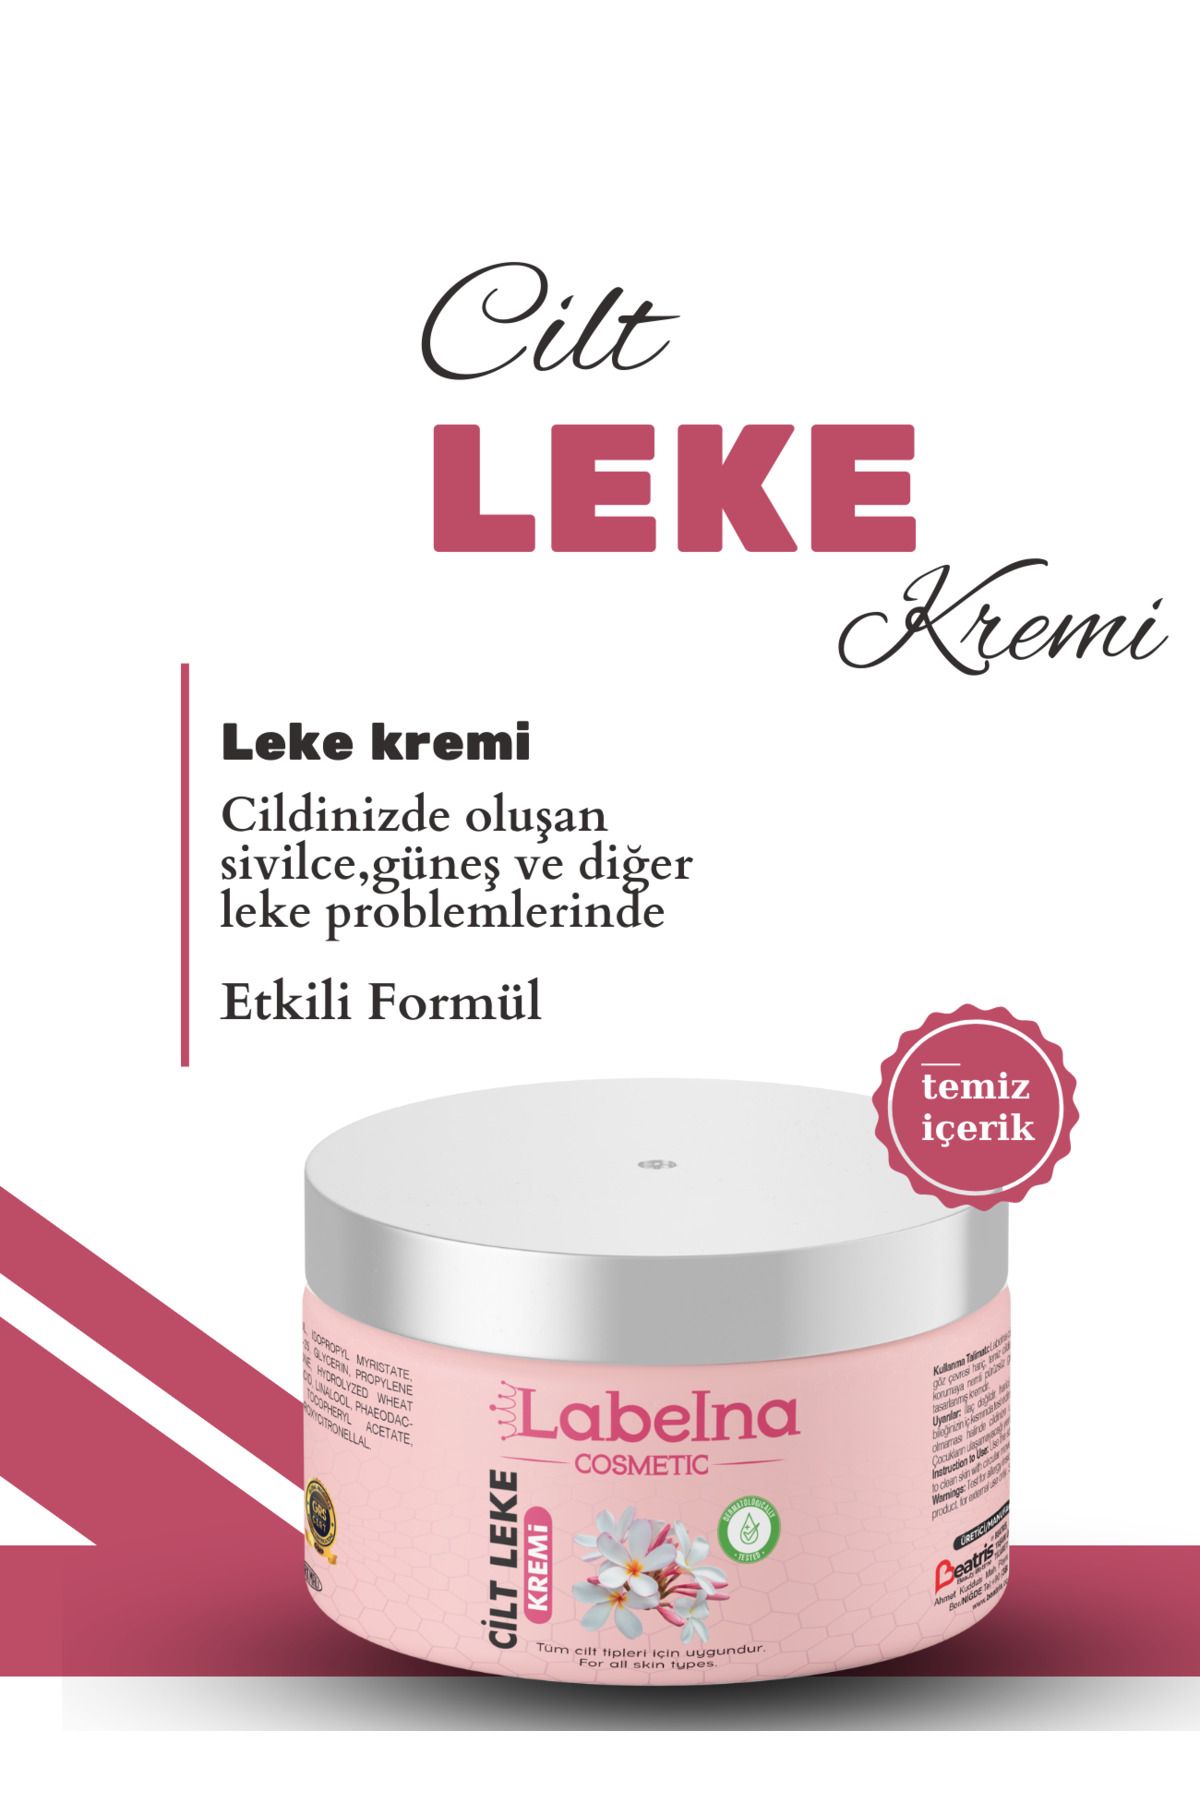 Labelna Cosmetic Cilt Leke Kremi 150 Ml Yüz Kremi